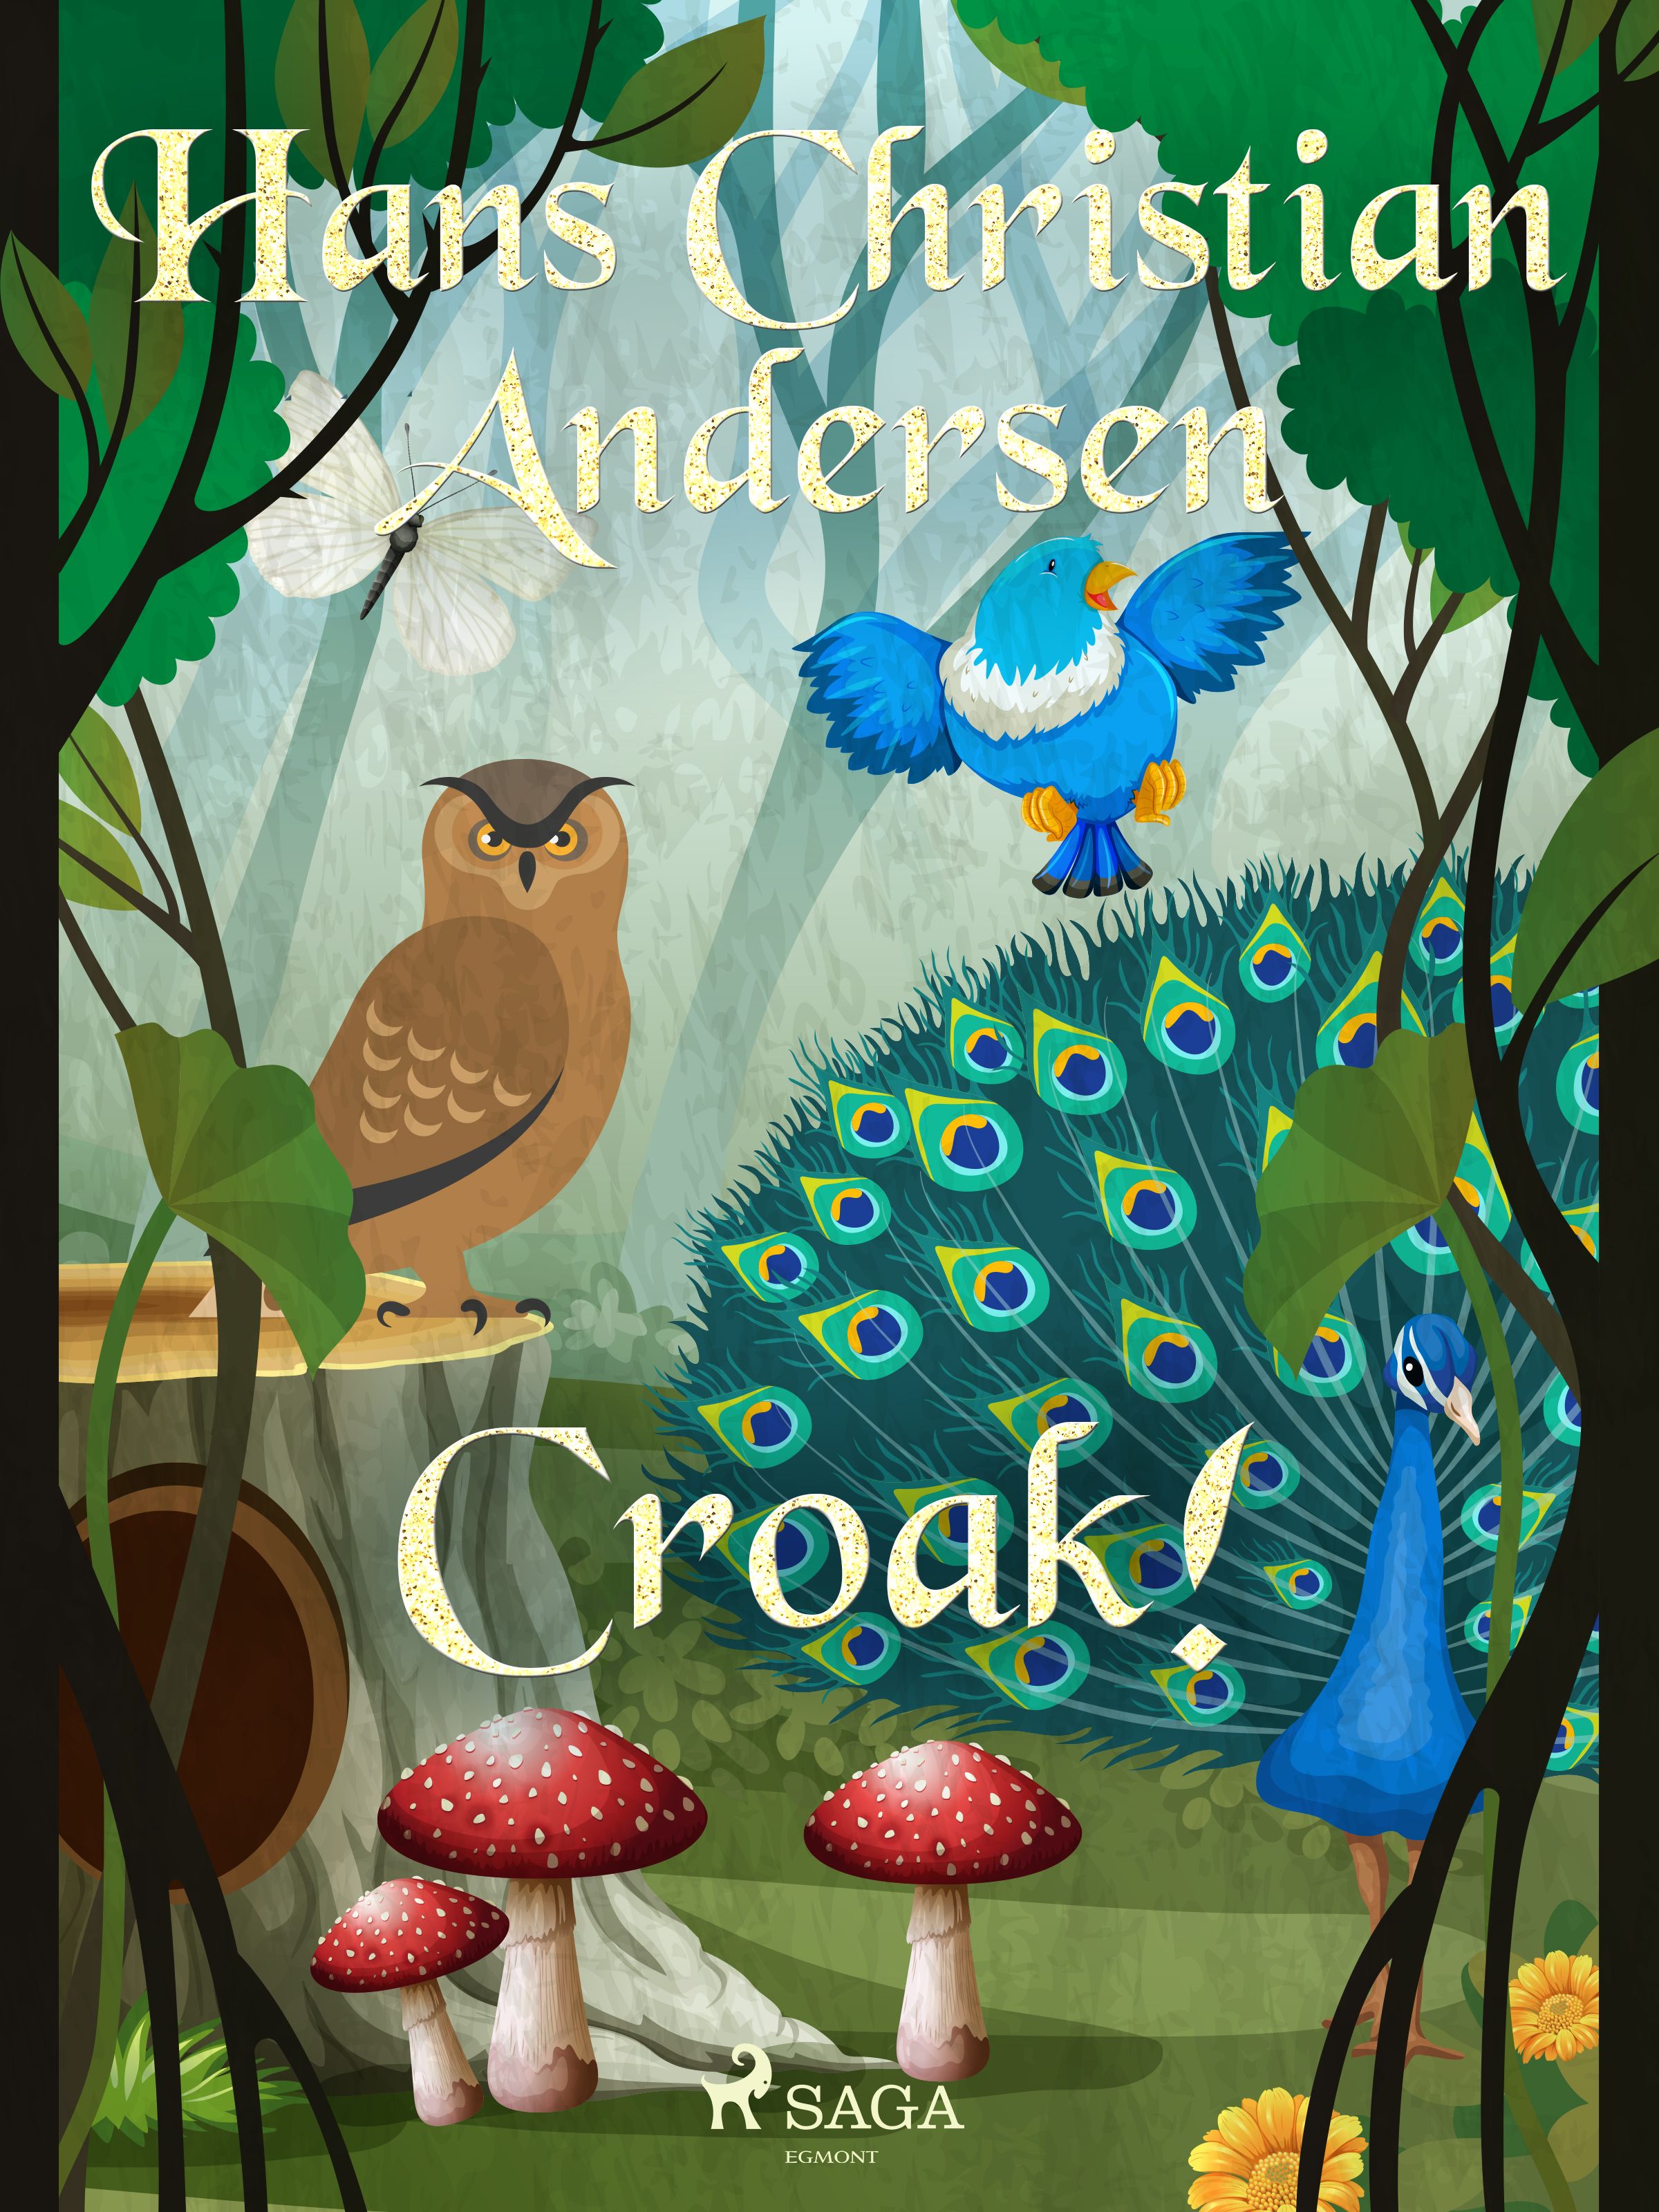 Croak!, eBook by Hans Christian Andersen